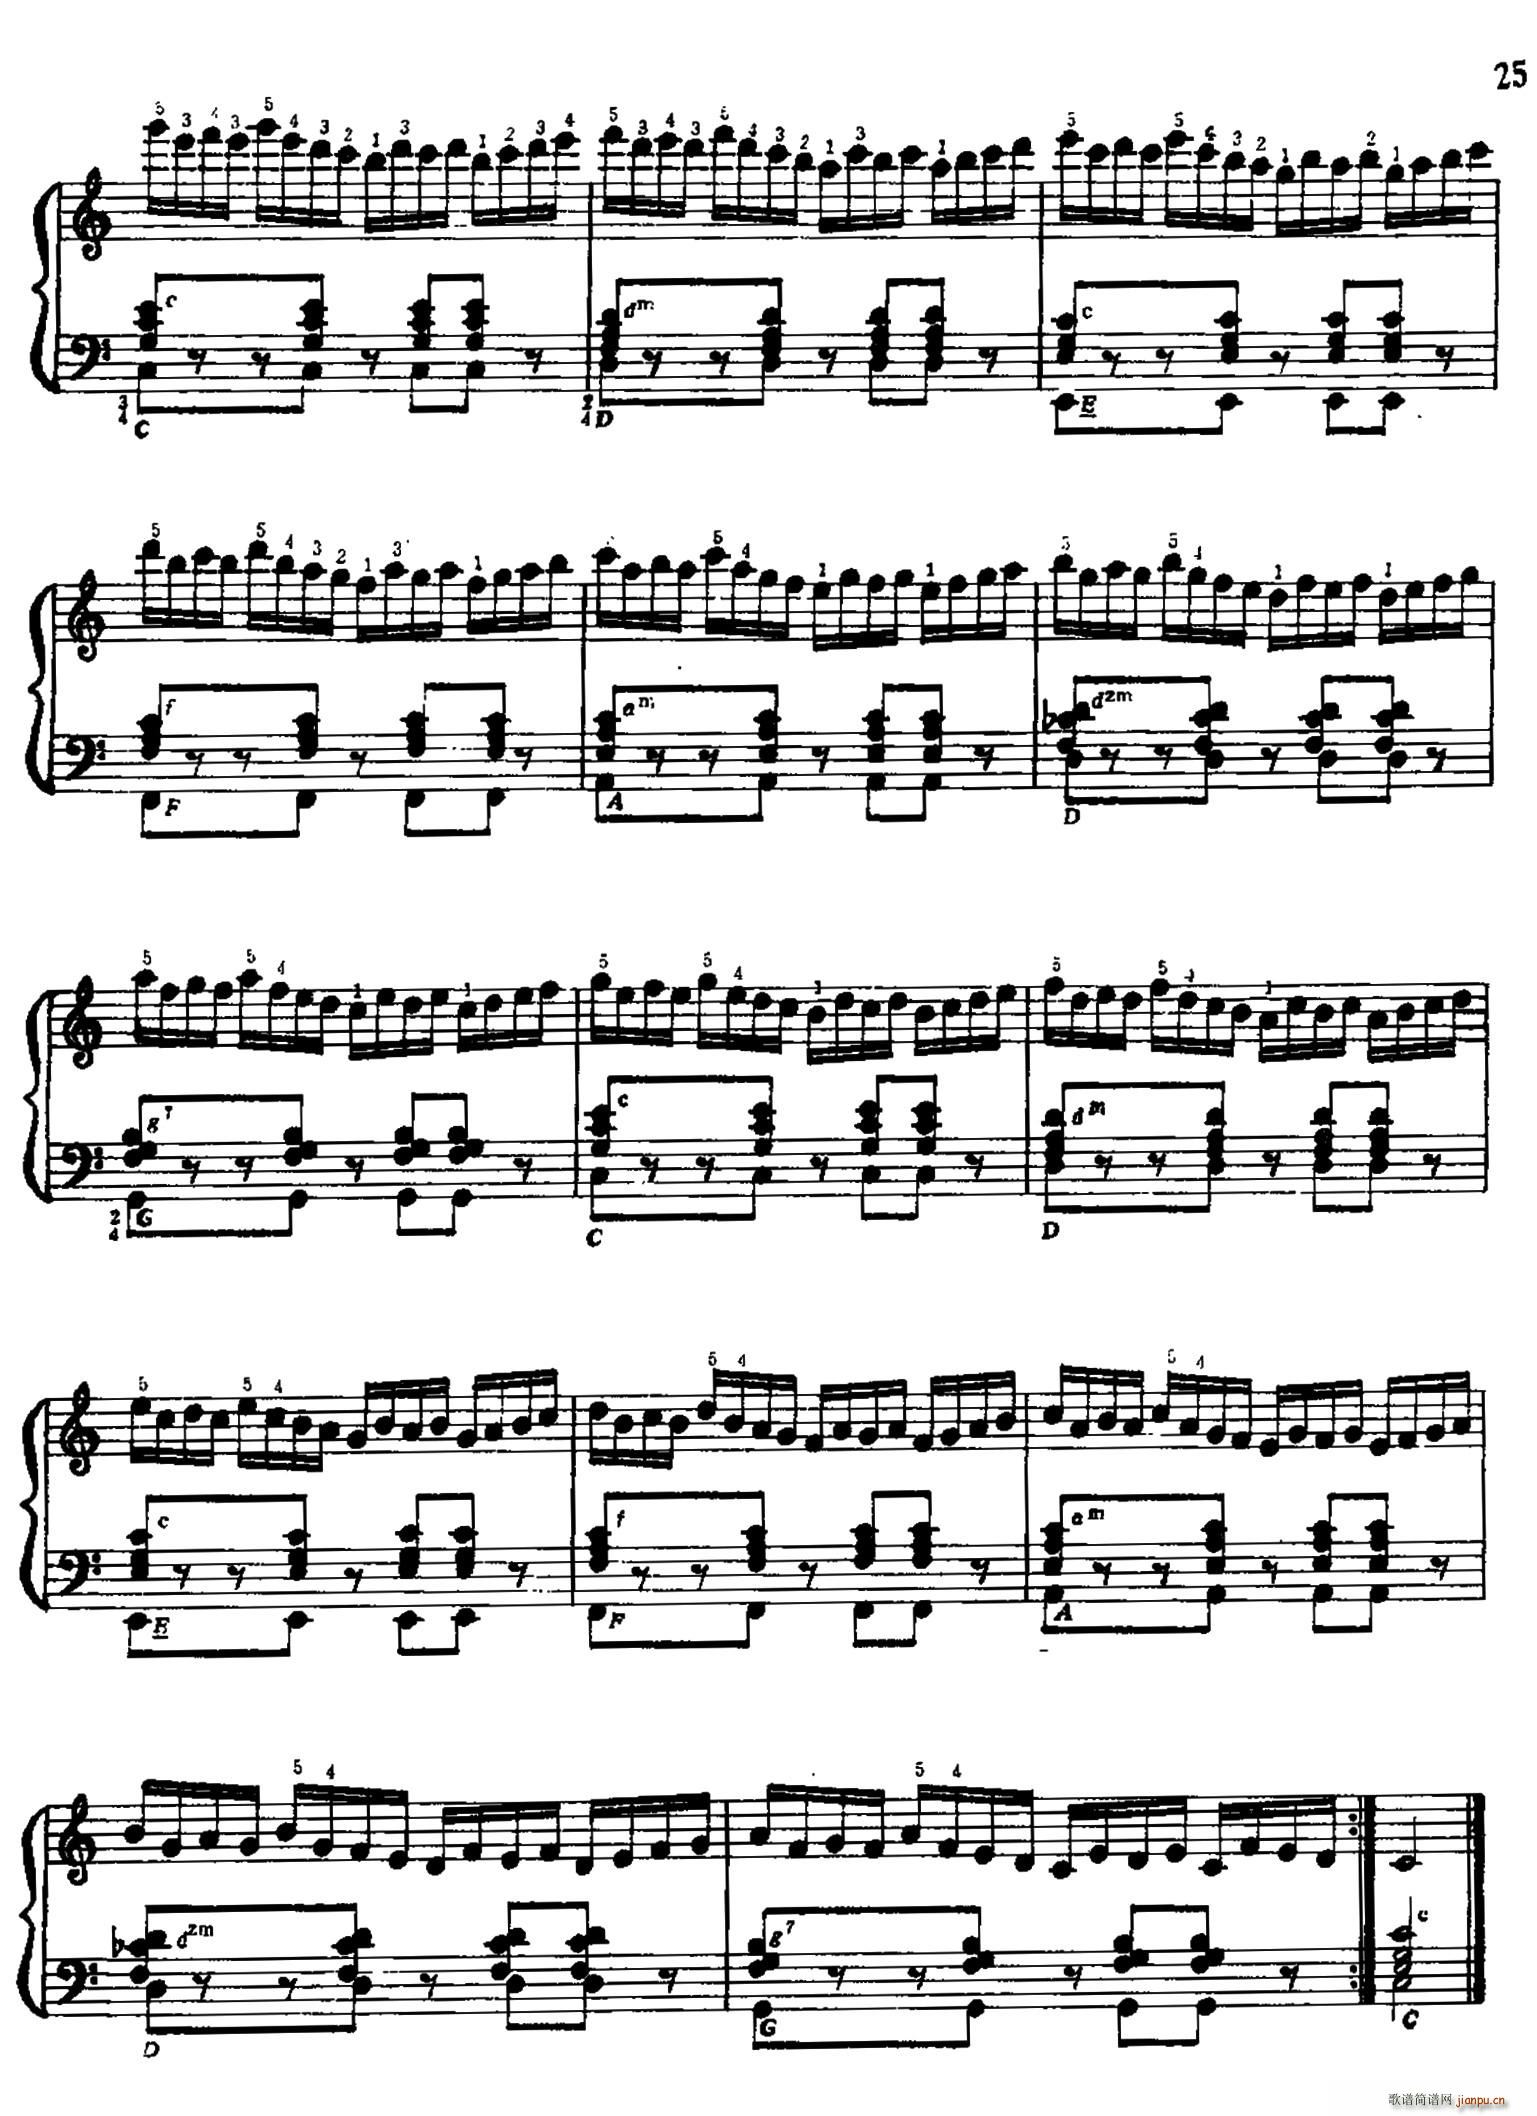 手风琴手指练习 第一部分 21 30 4